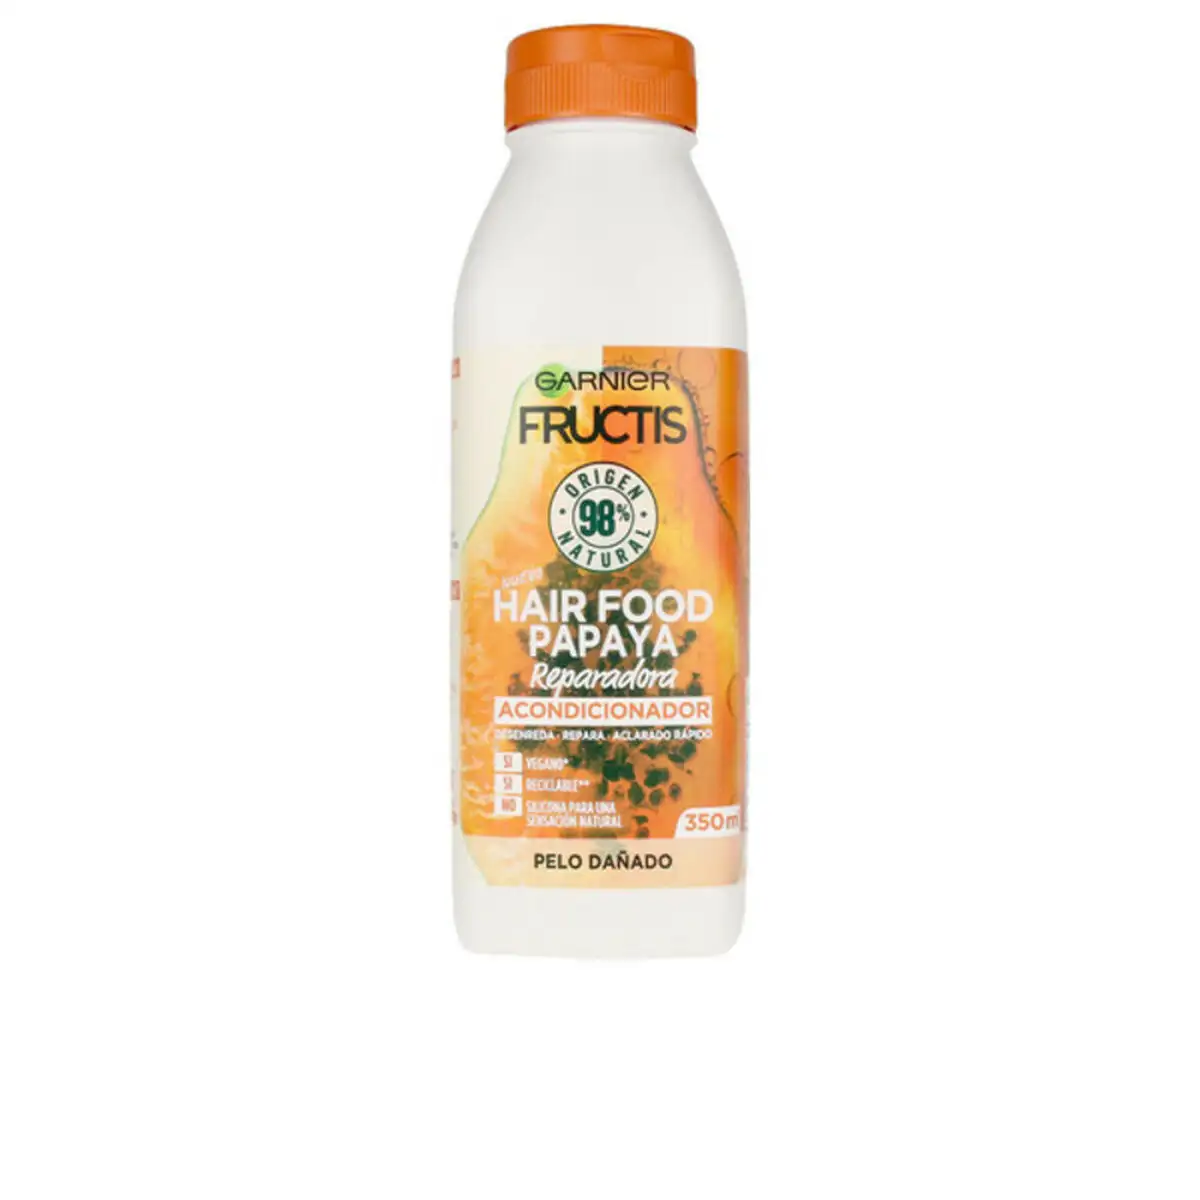 Apres shampooing hair food papaya garnier 350 ml _9979. Entrez dans l'Univers de DIAYTAR SENEGAL - Où Chaque Produit a une Signification. Explorez notre gamme diversifiée et découvrez des articles qui résonnent avec votre vie.